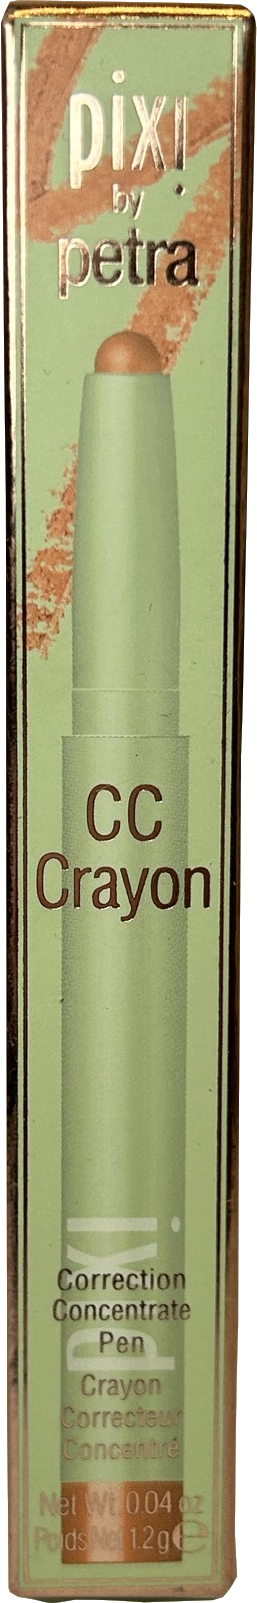 Pixi Cc Crayon Bye Undereye 1.2g